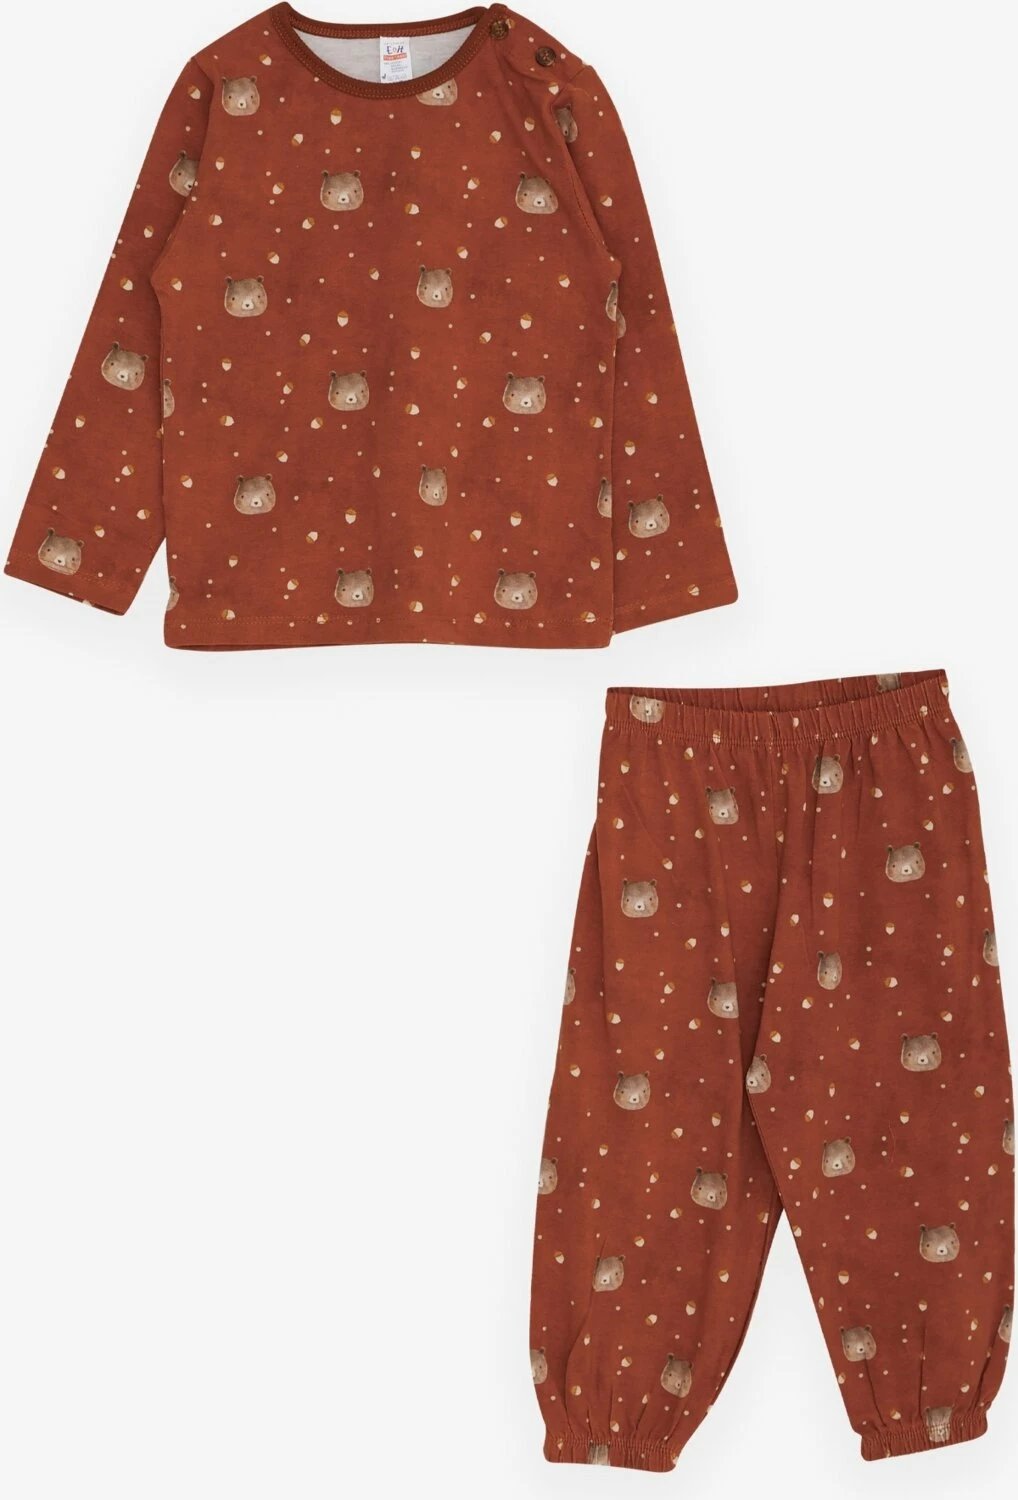 Pijama për djem të vegjël Breeze, me model ariu, ngjyrë kafe